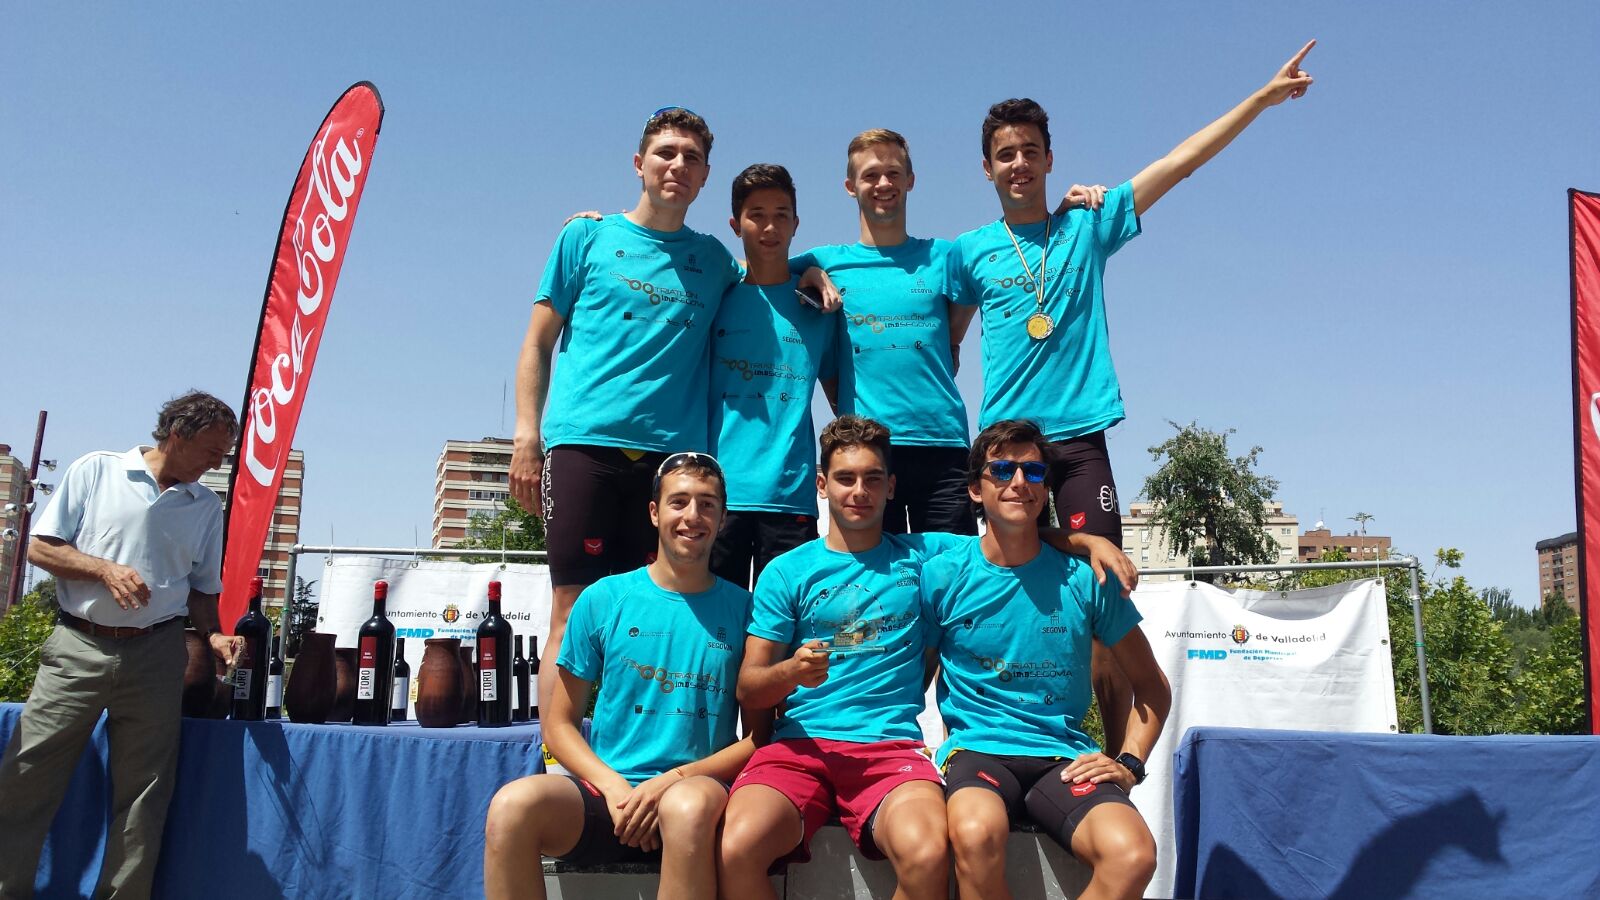 El Club Triatlón IMD Segovia, campeón de Castilla y León de Triatlón Sprint